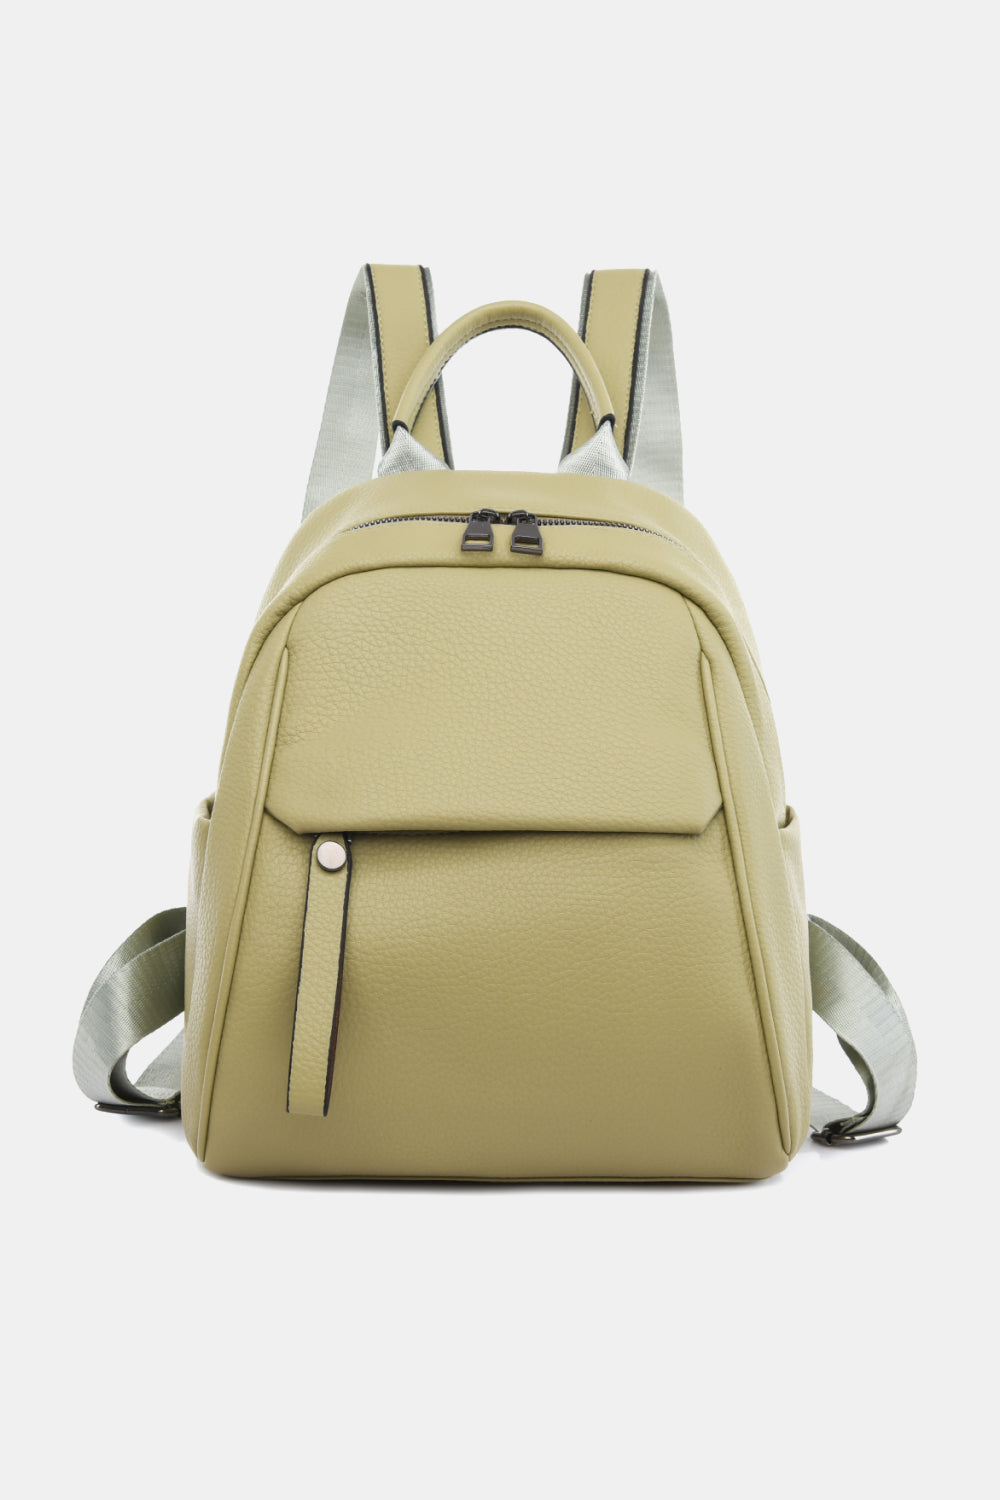 Medium PU Leather Backpack - Fashion BTQ -  - Fashion BTQ